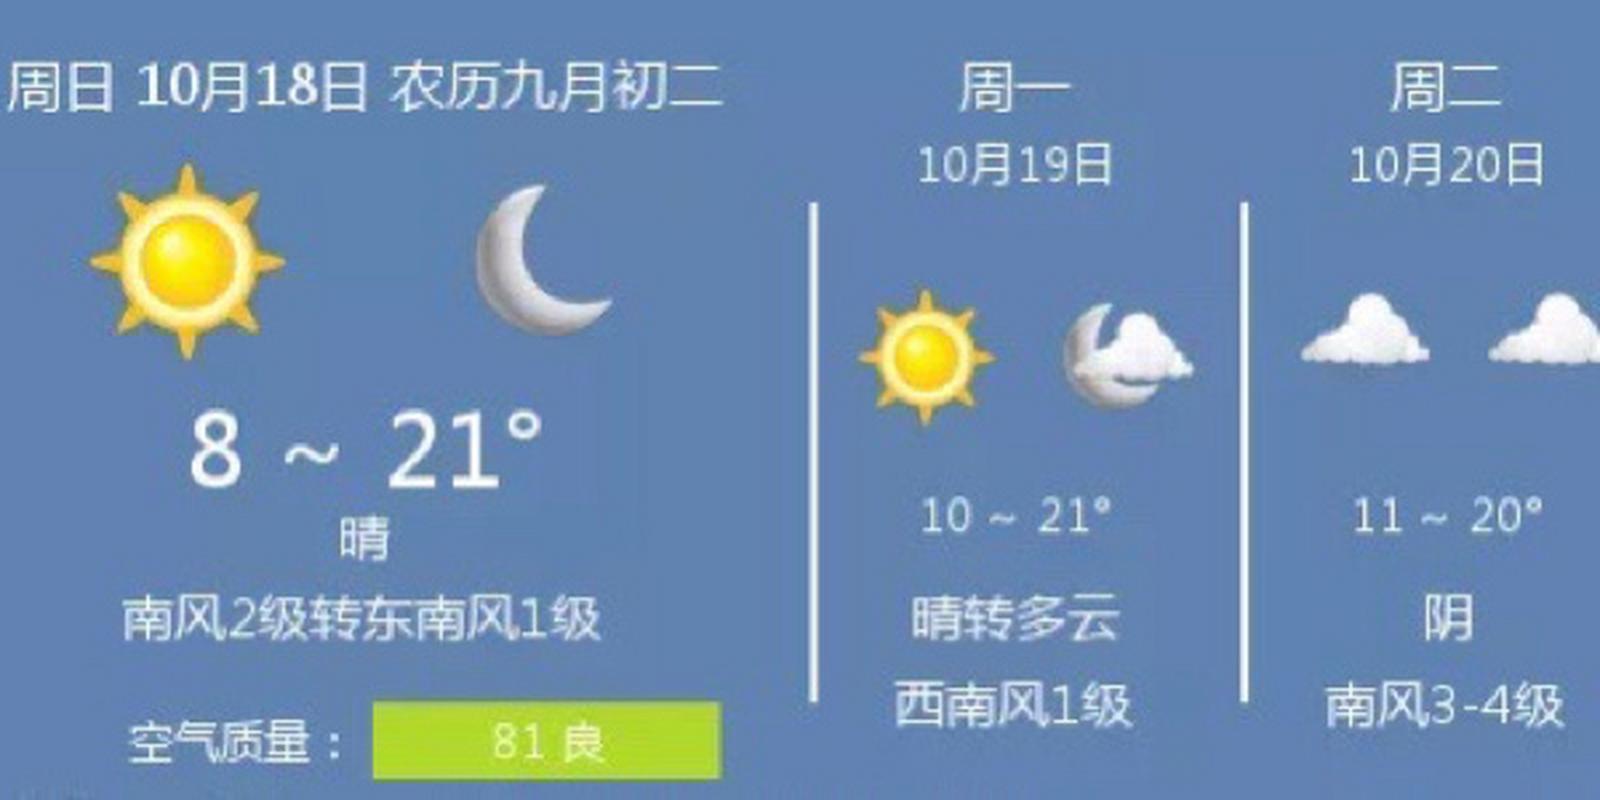 天津最近天气适合玩儿吗